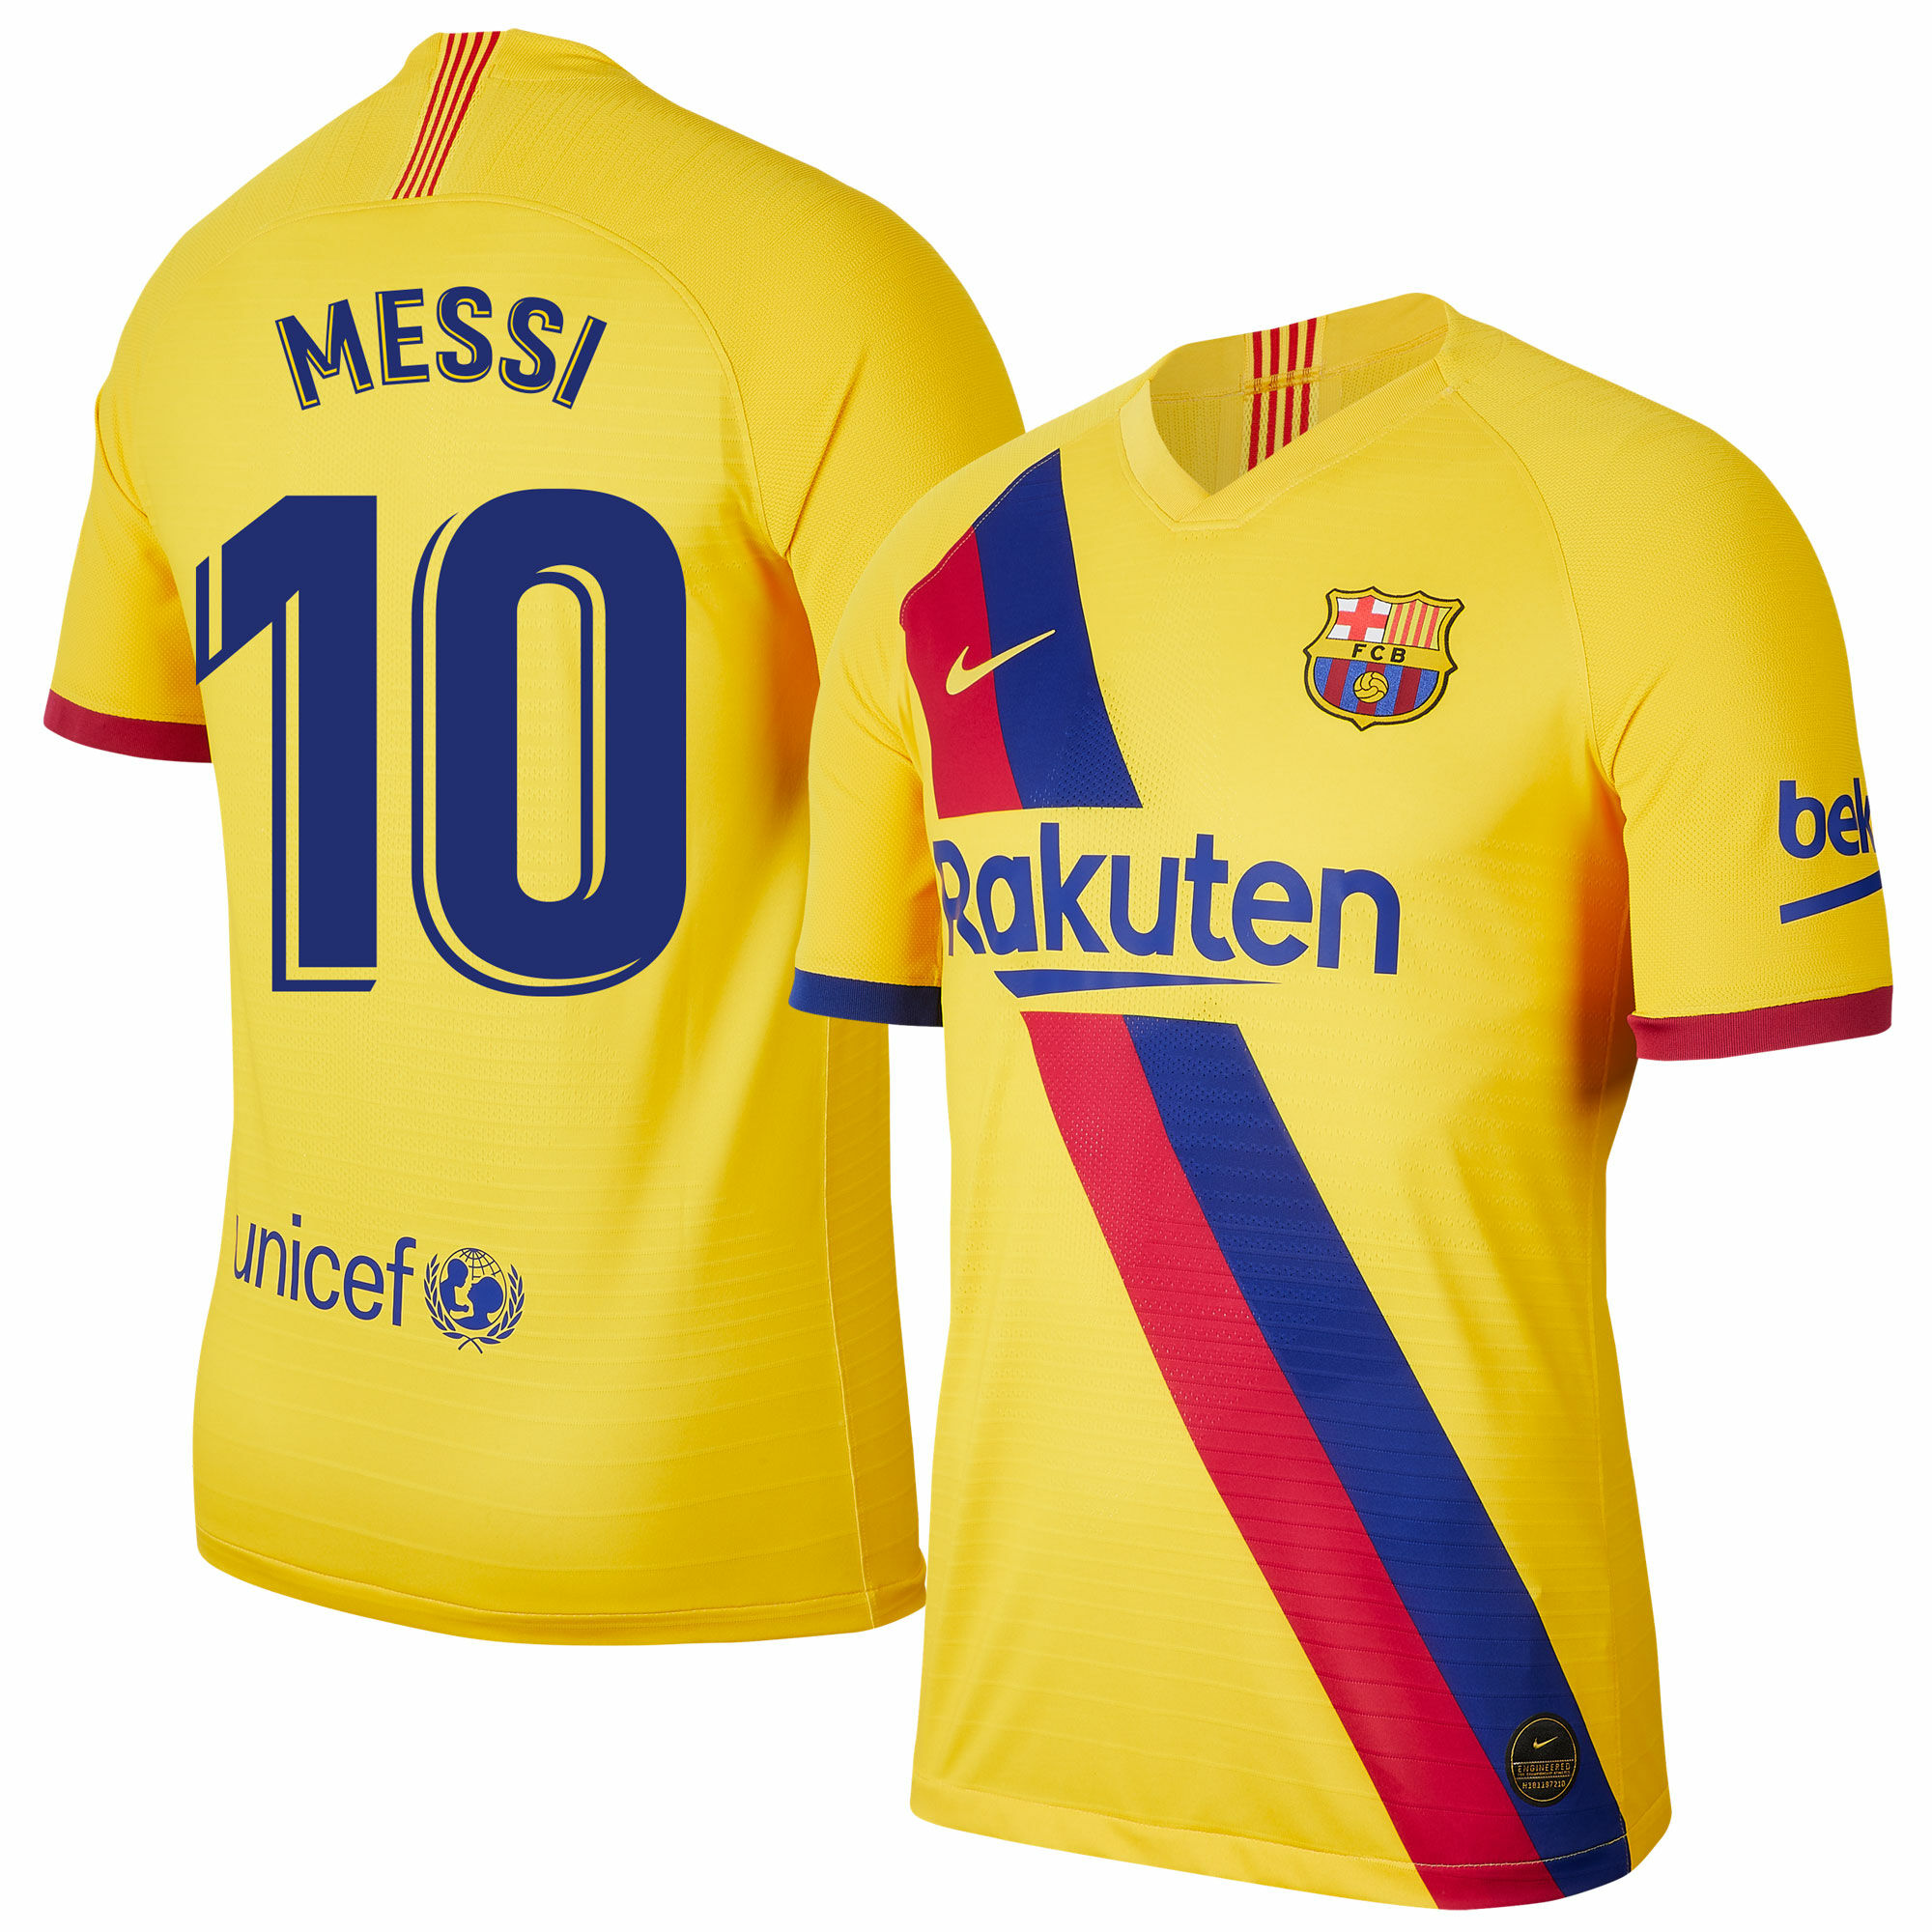 Barcelona - Dres fotbalový - fan potisk, sezóna 2019/20, žlutý, číslo 10, Lionel Messi, venkovní